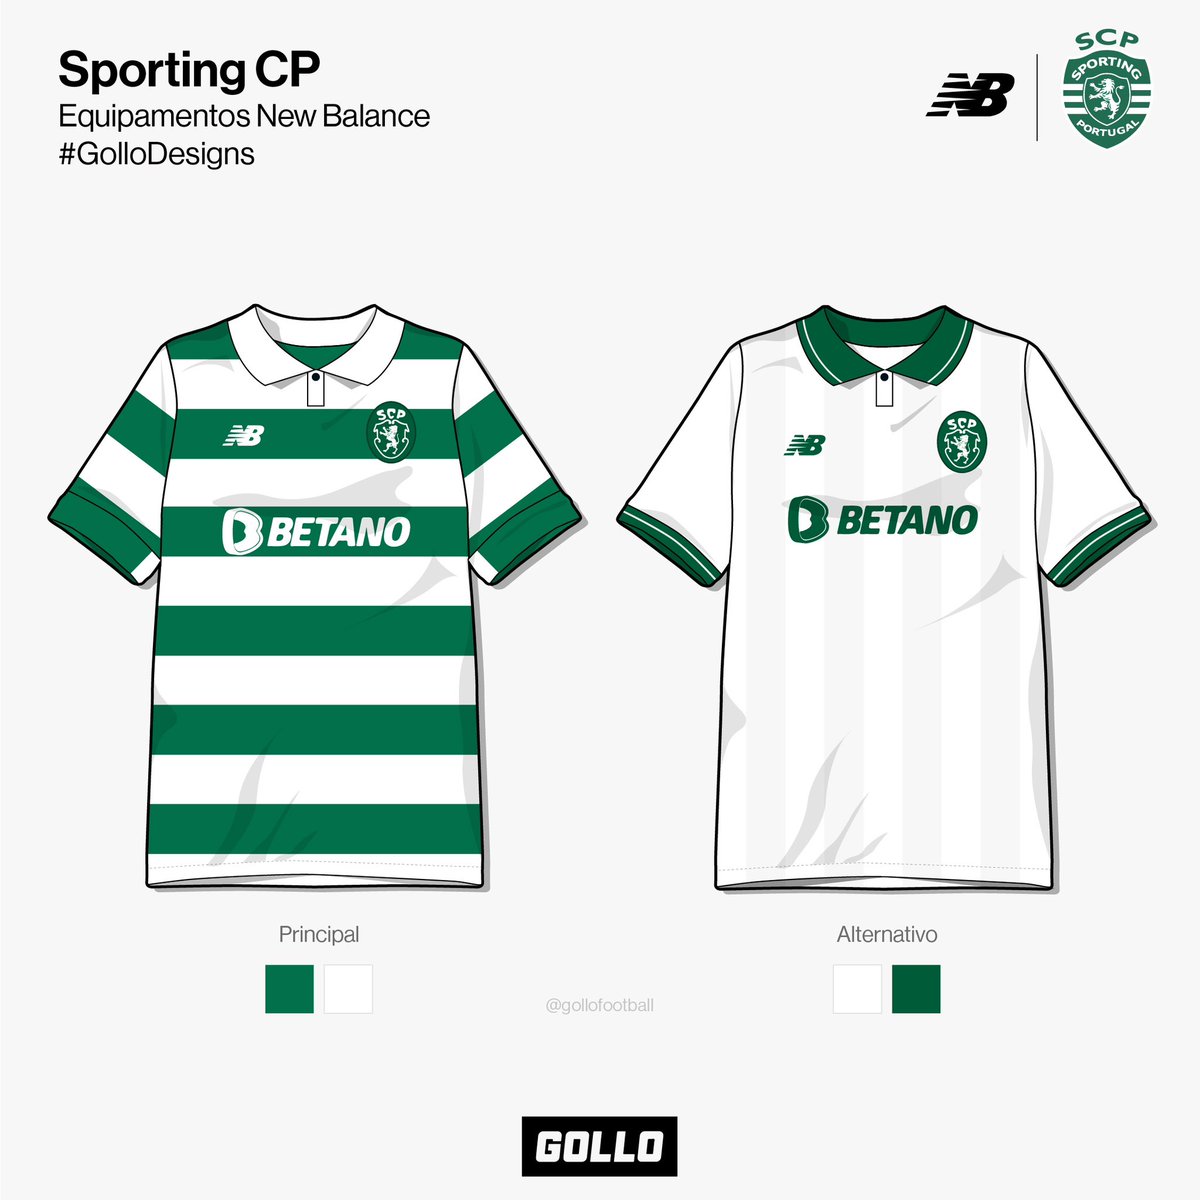 Em véspera de Clássico, fizemos a troca de marcas dos equipamentos de Porto e Sporting. Desta vez trazemos os equipamentos do Sporting CP produzidos pela New Balance. O que achas das camisolas? Seria uma boa troca? 🦁👇🏻